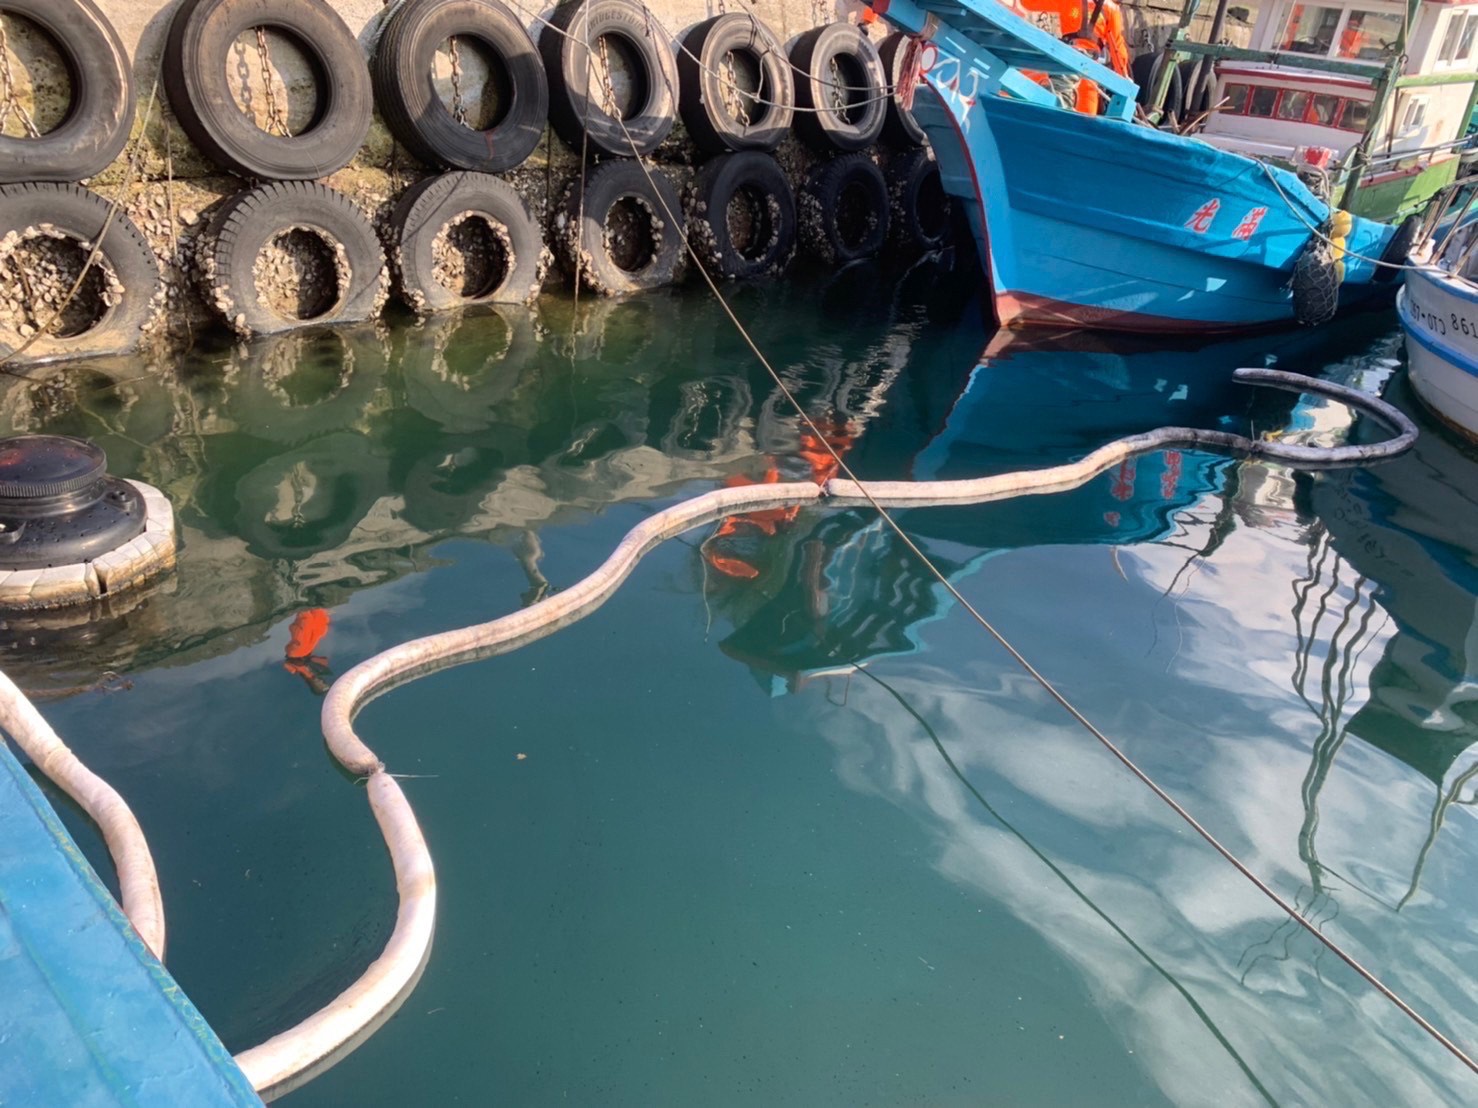 綠島南寮港驚見油污染  海巡同仁迅速處置清除